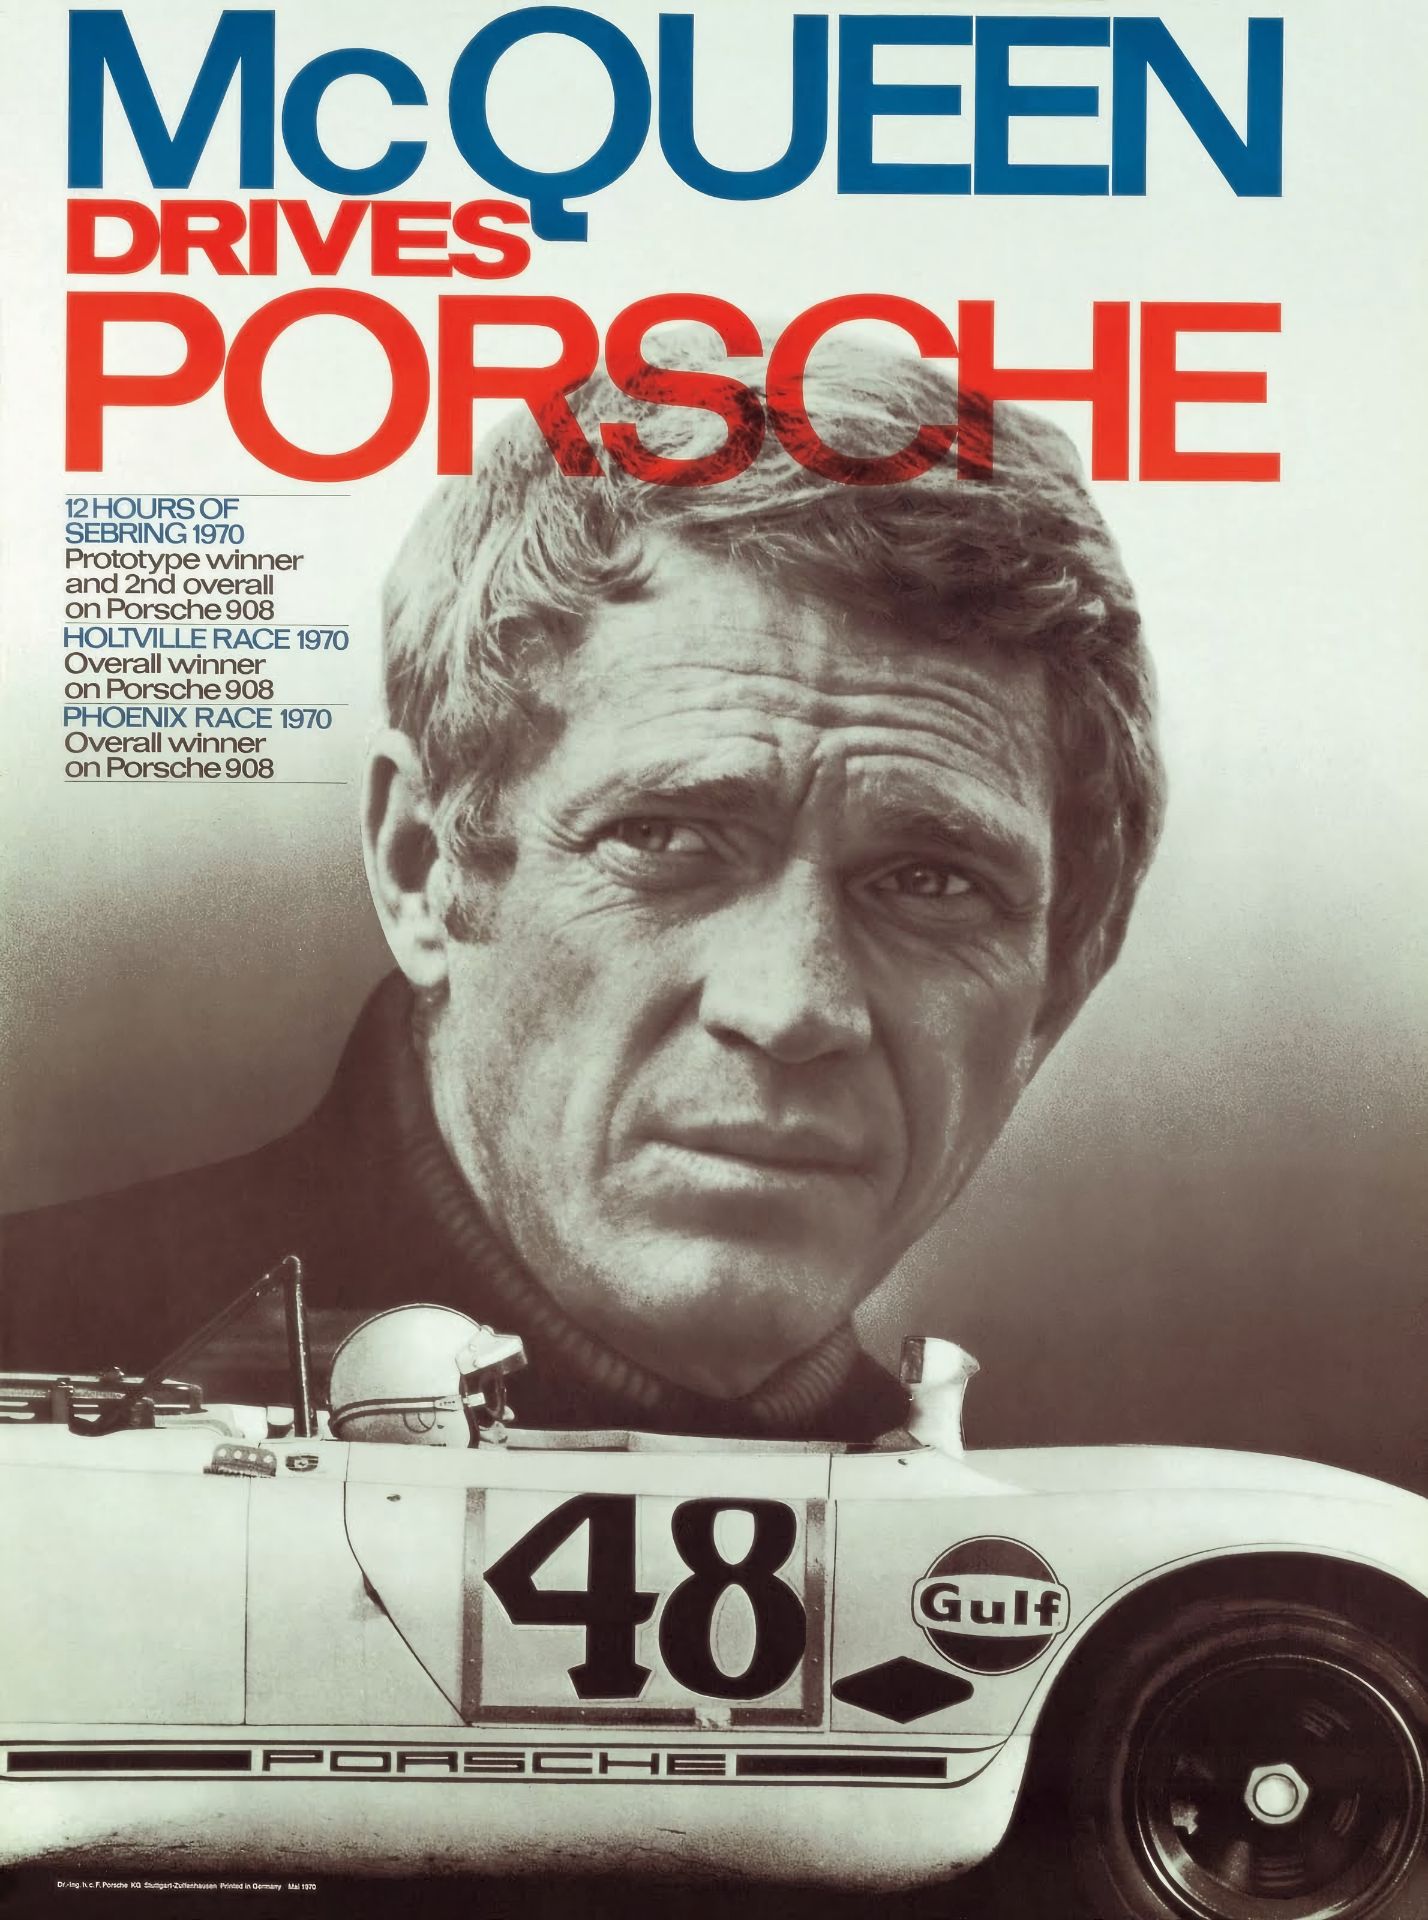 Steve McQueen Drives Porsche Poster
